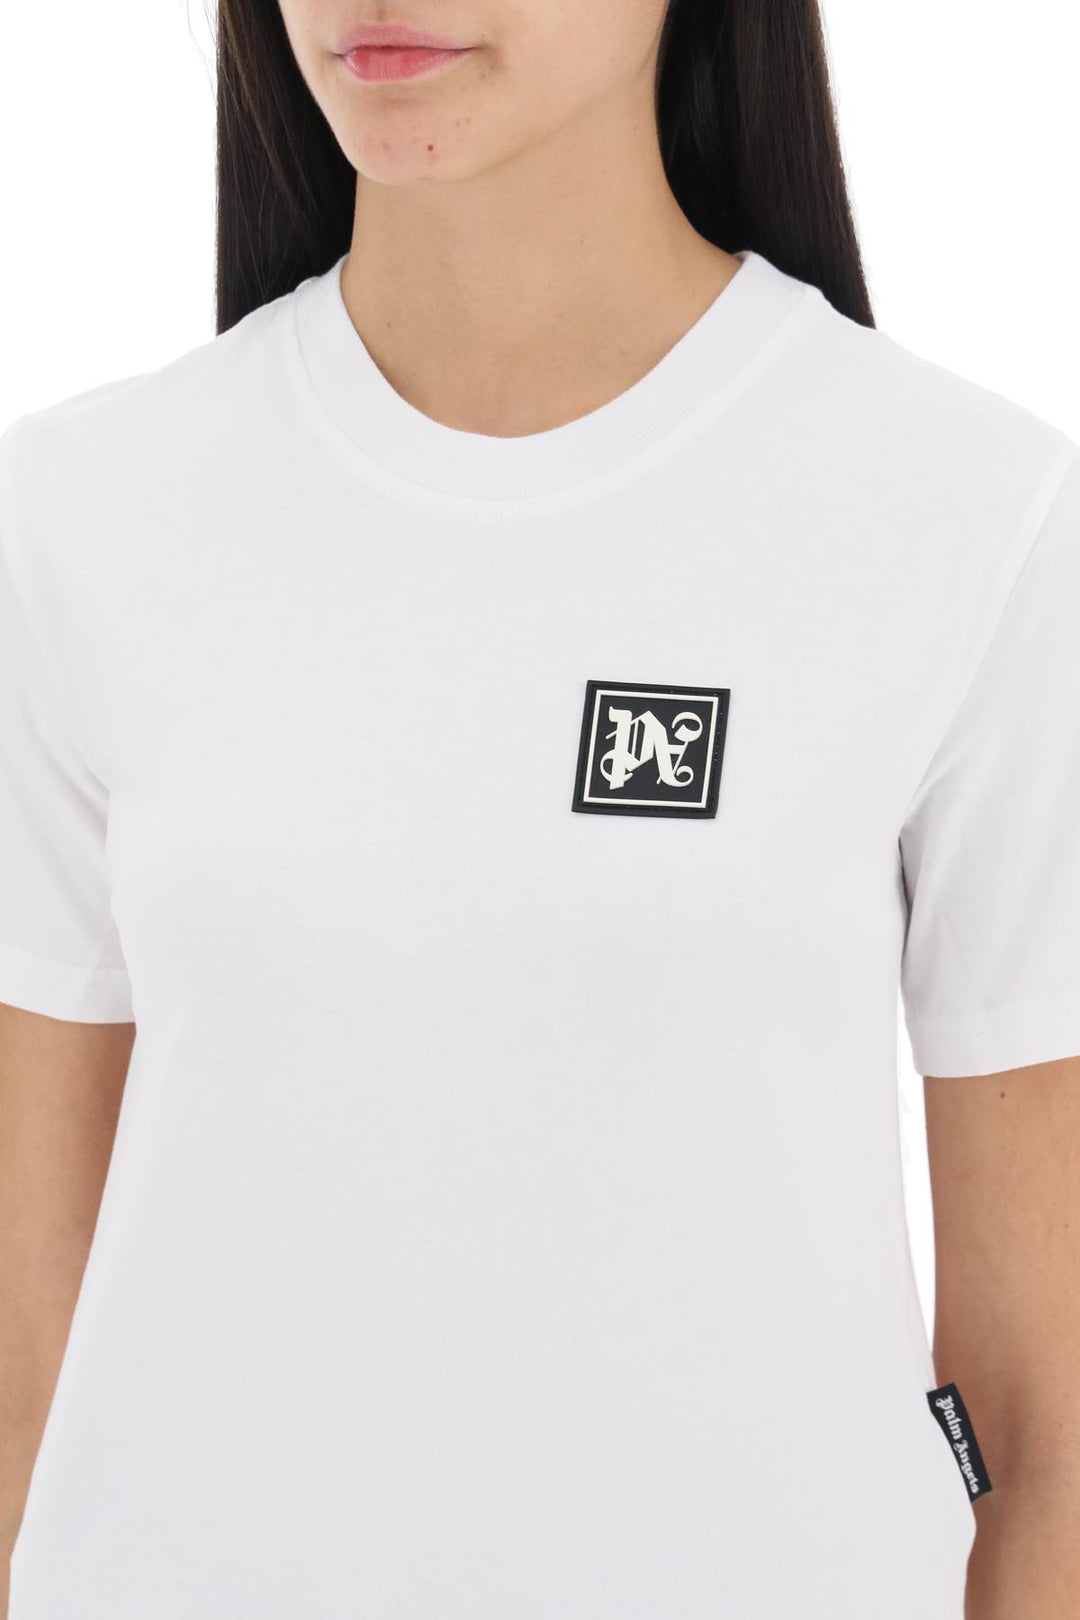 Palm Angels Ski Club T Shirt   Bianco